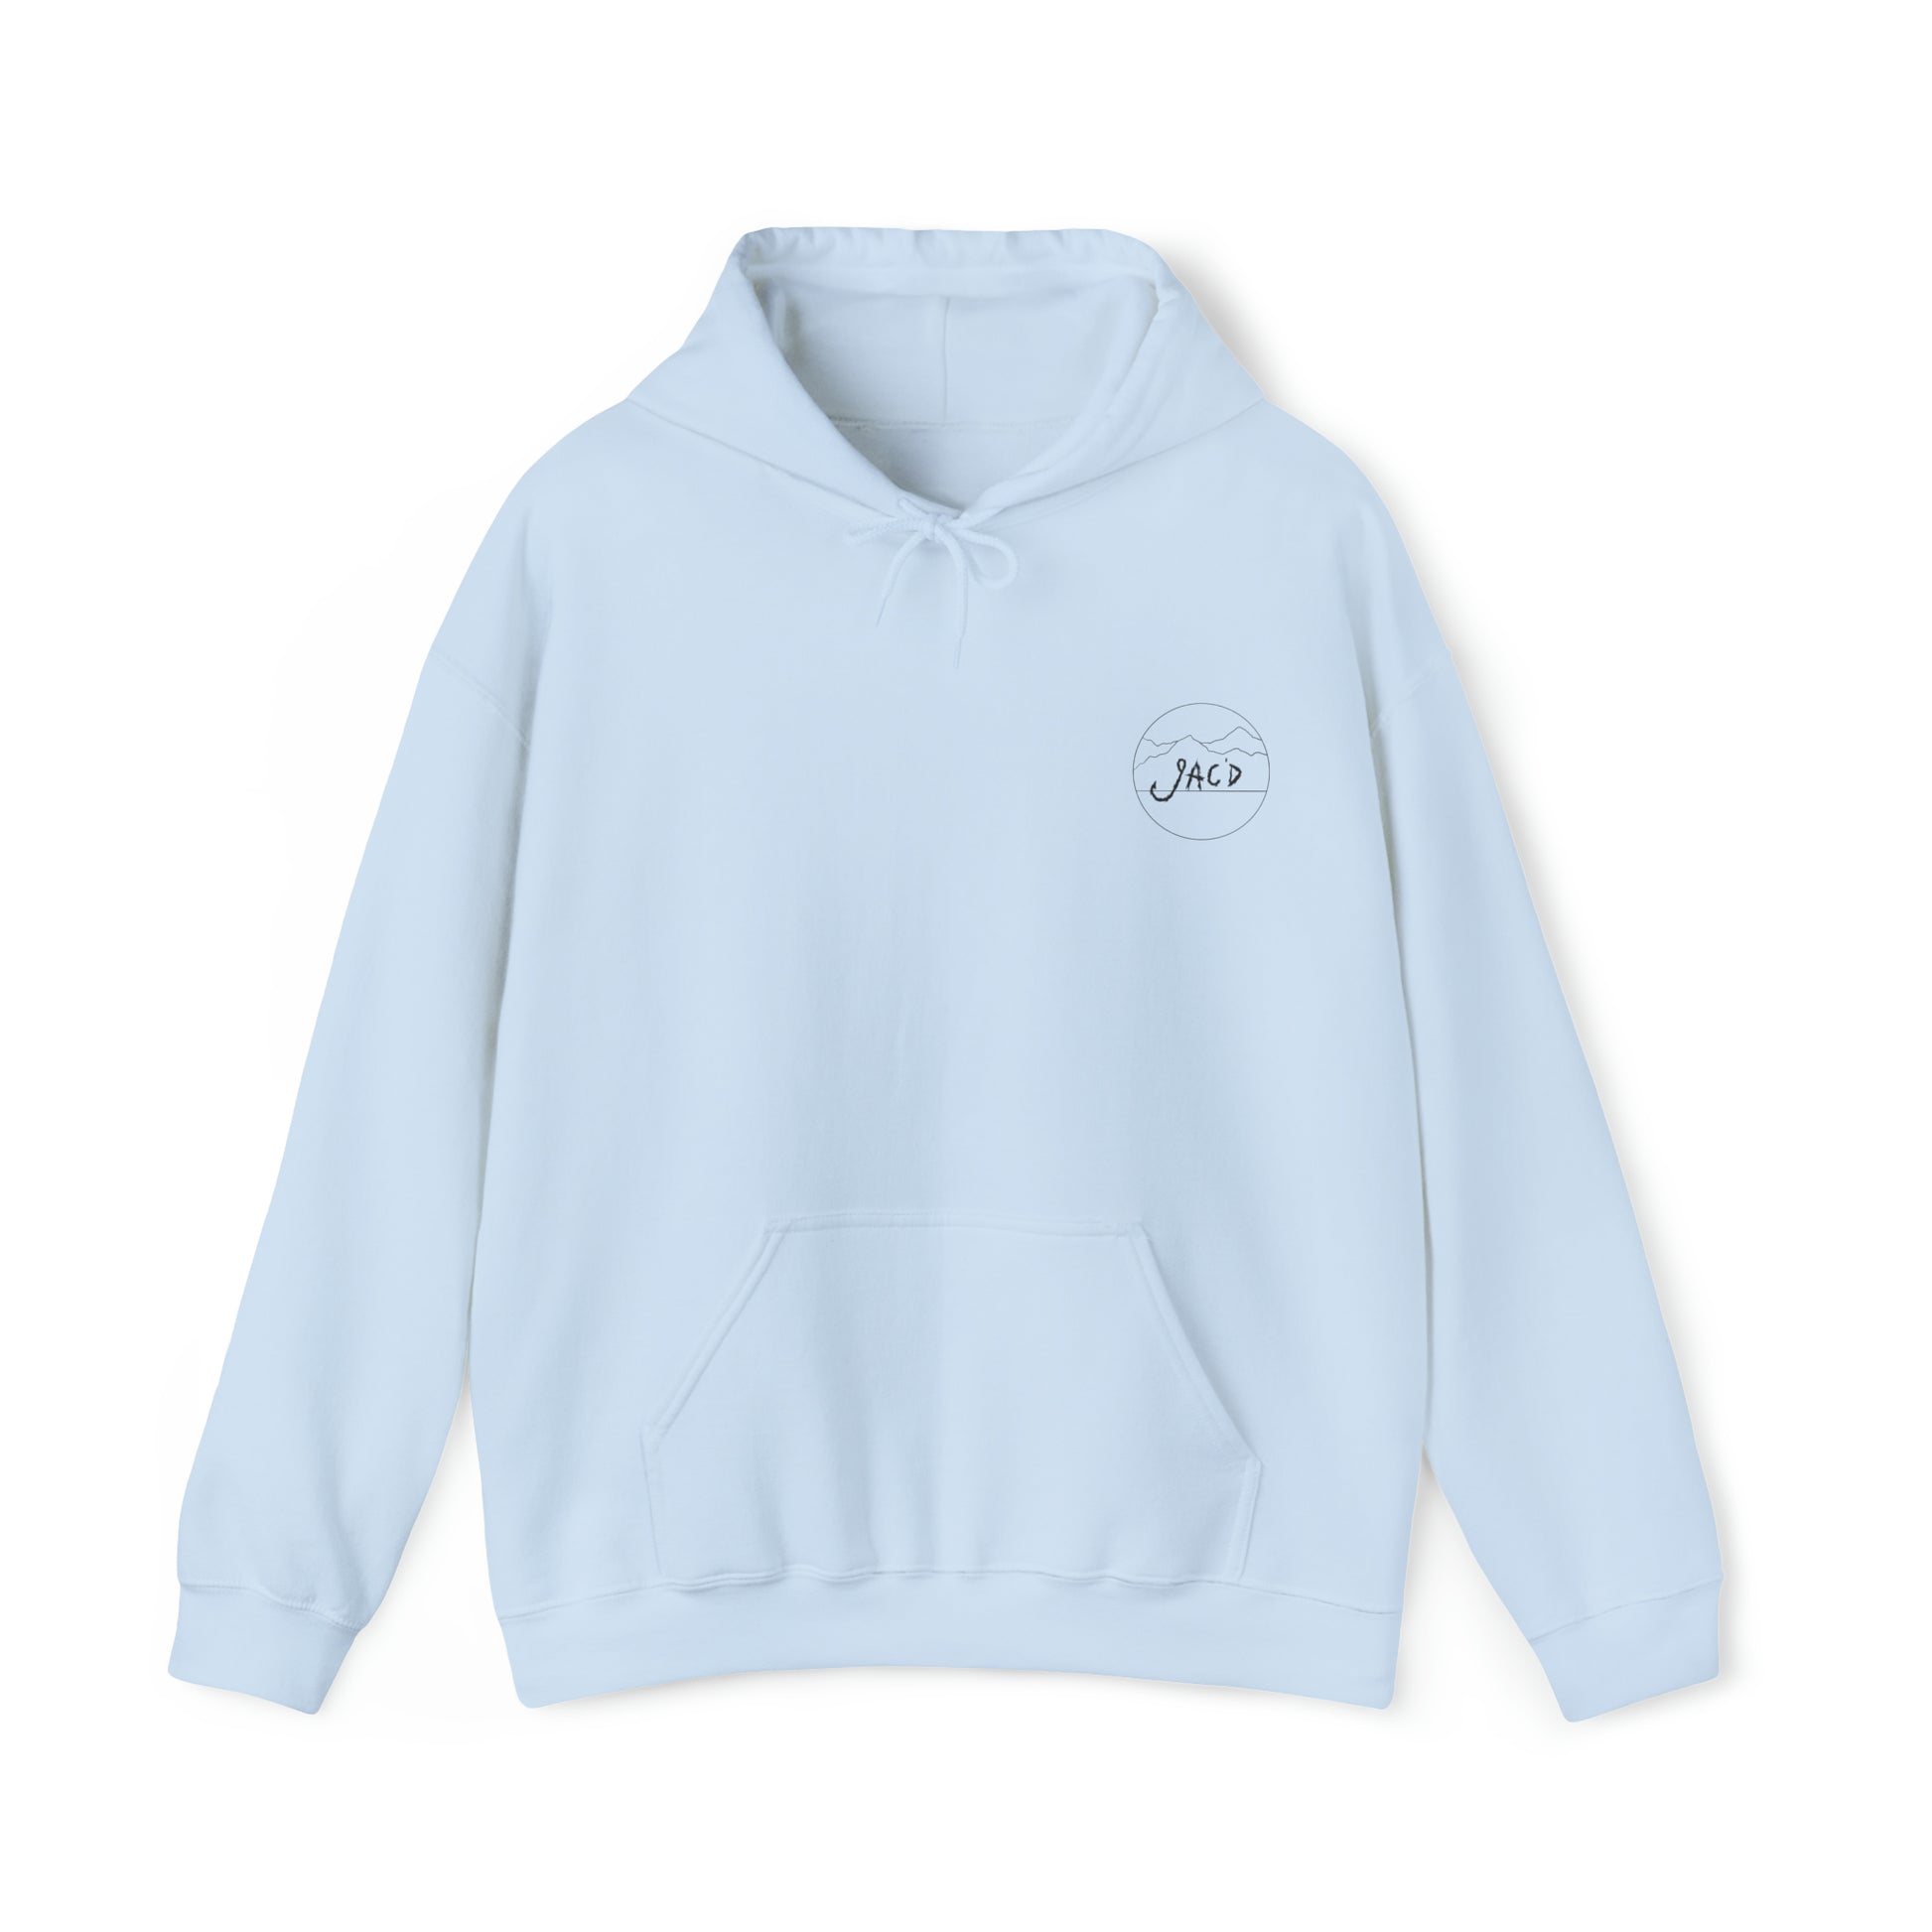 American Messy Bun - Heavy Blend™ Hooded Sweatshirt - Premium Hoodie from Printify - Just $44.99! Shop now at JAC’D